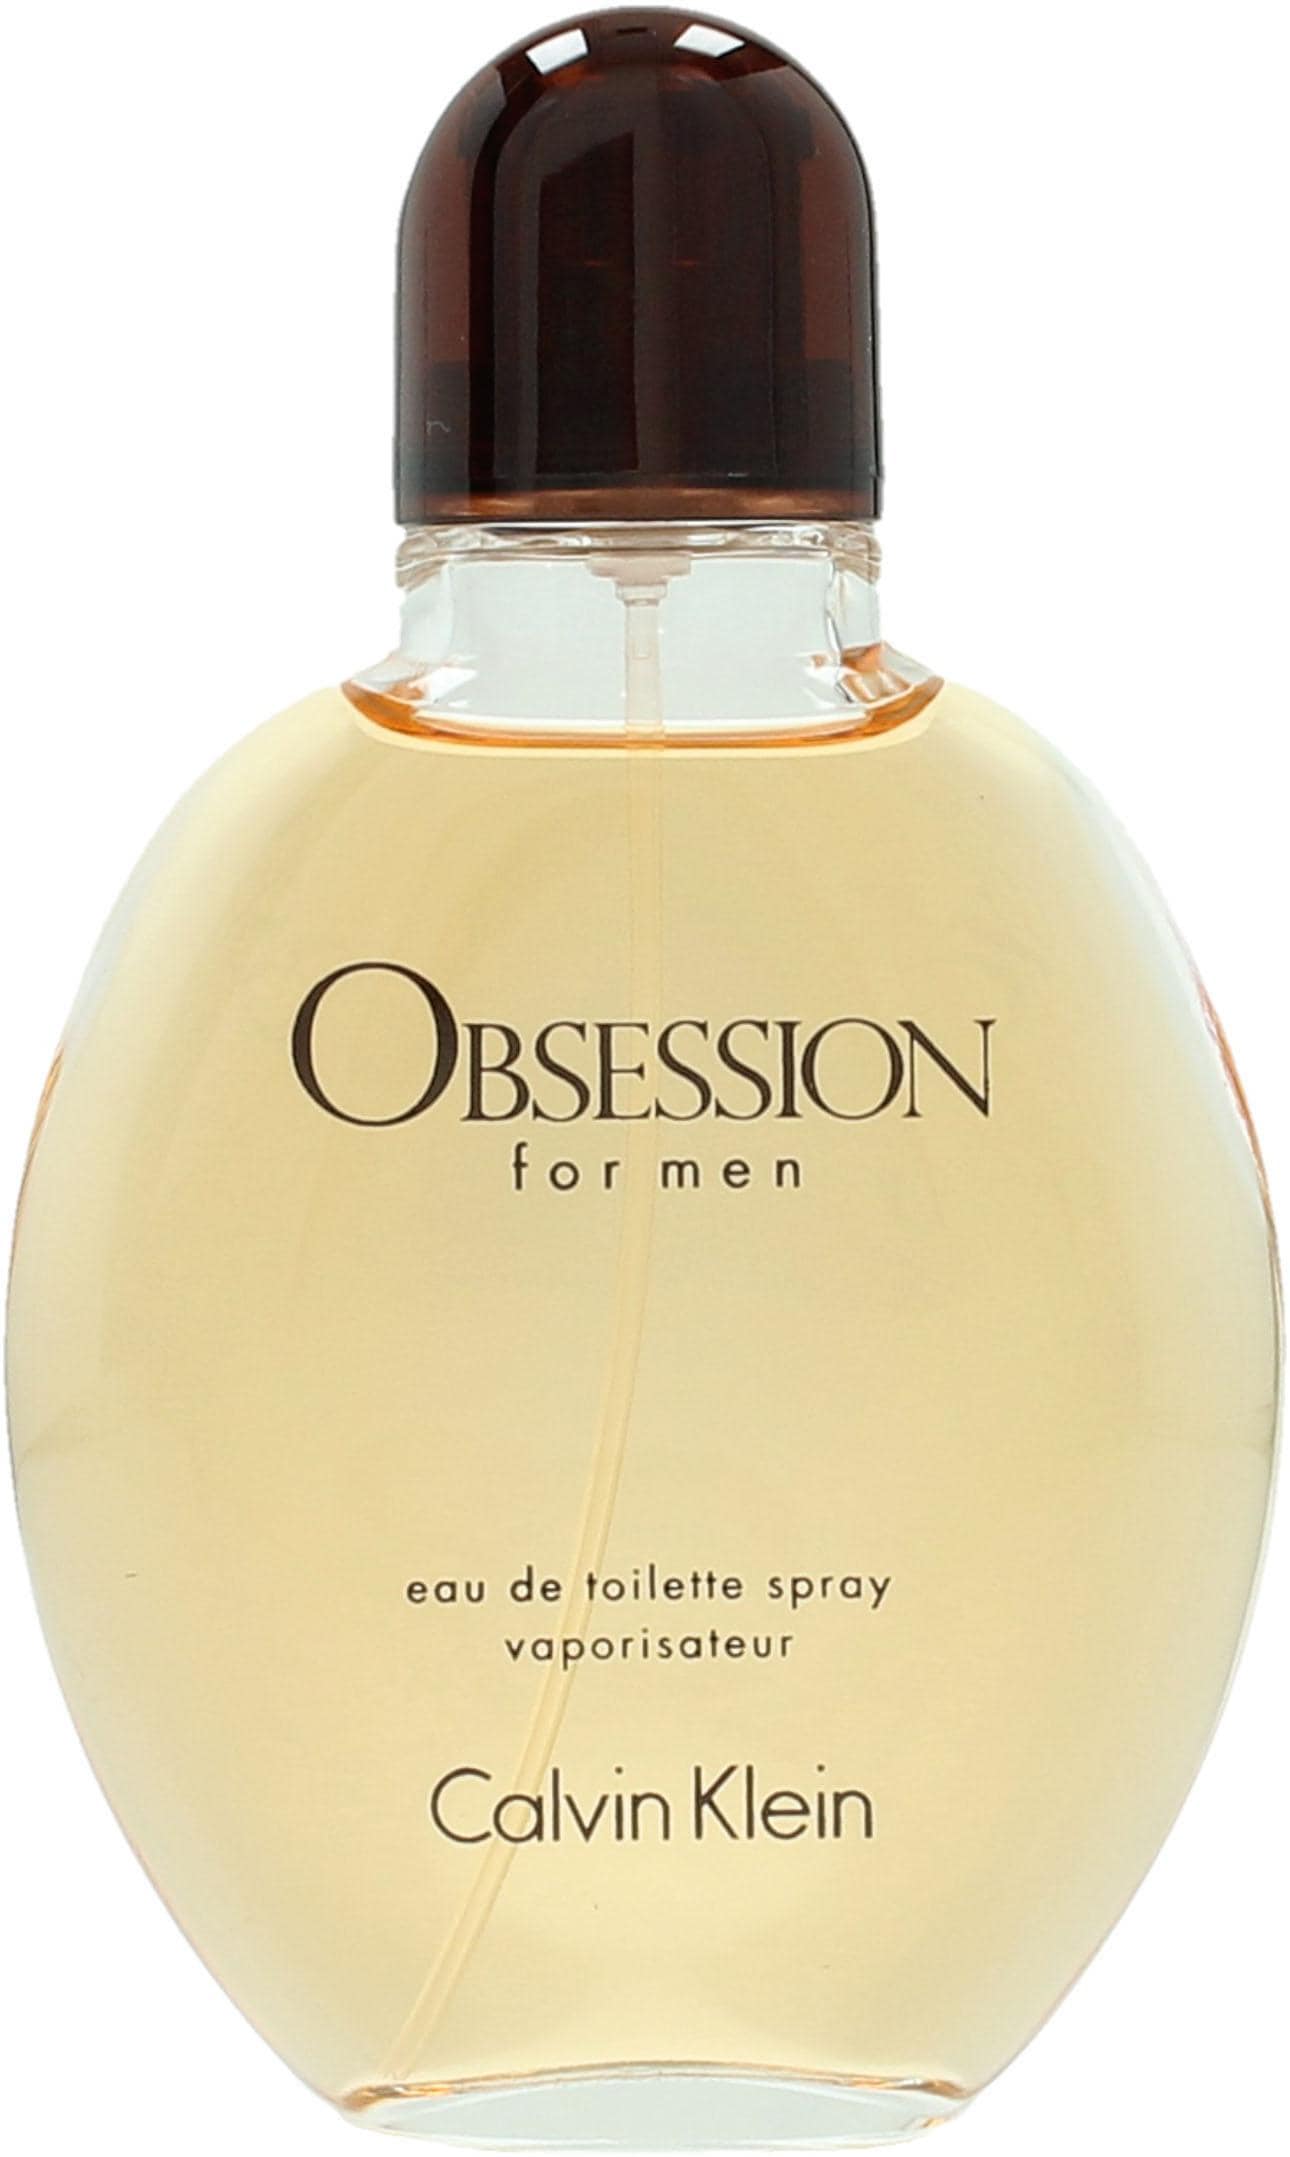 For Eau »Obsession Toilette de Klein Men« Calvin